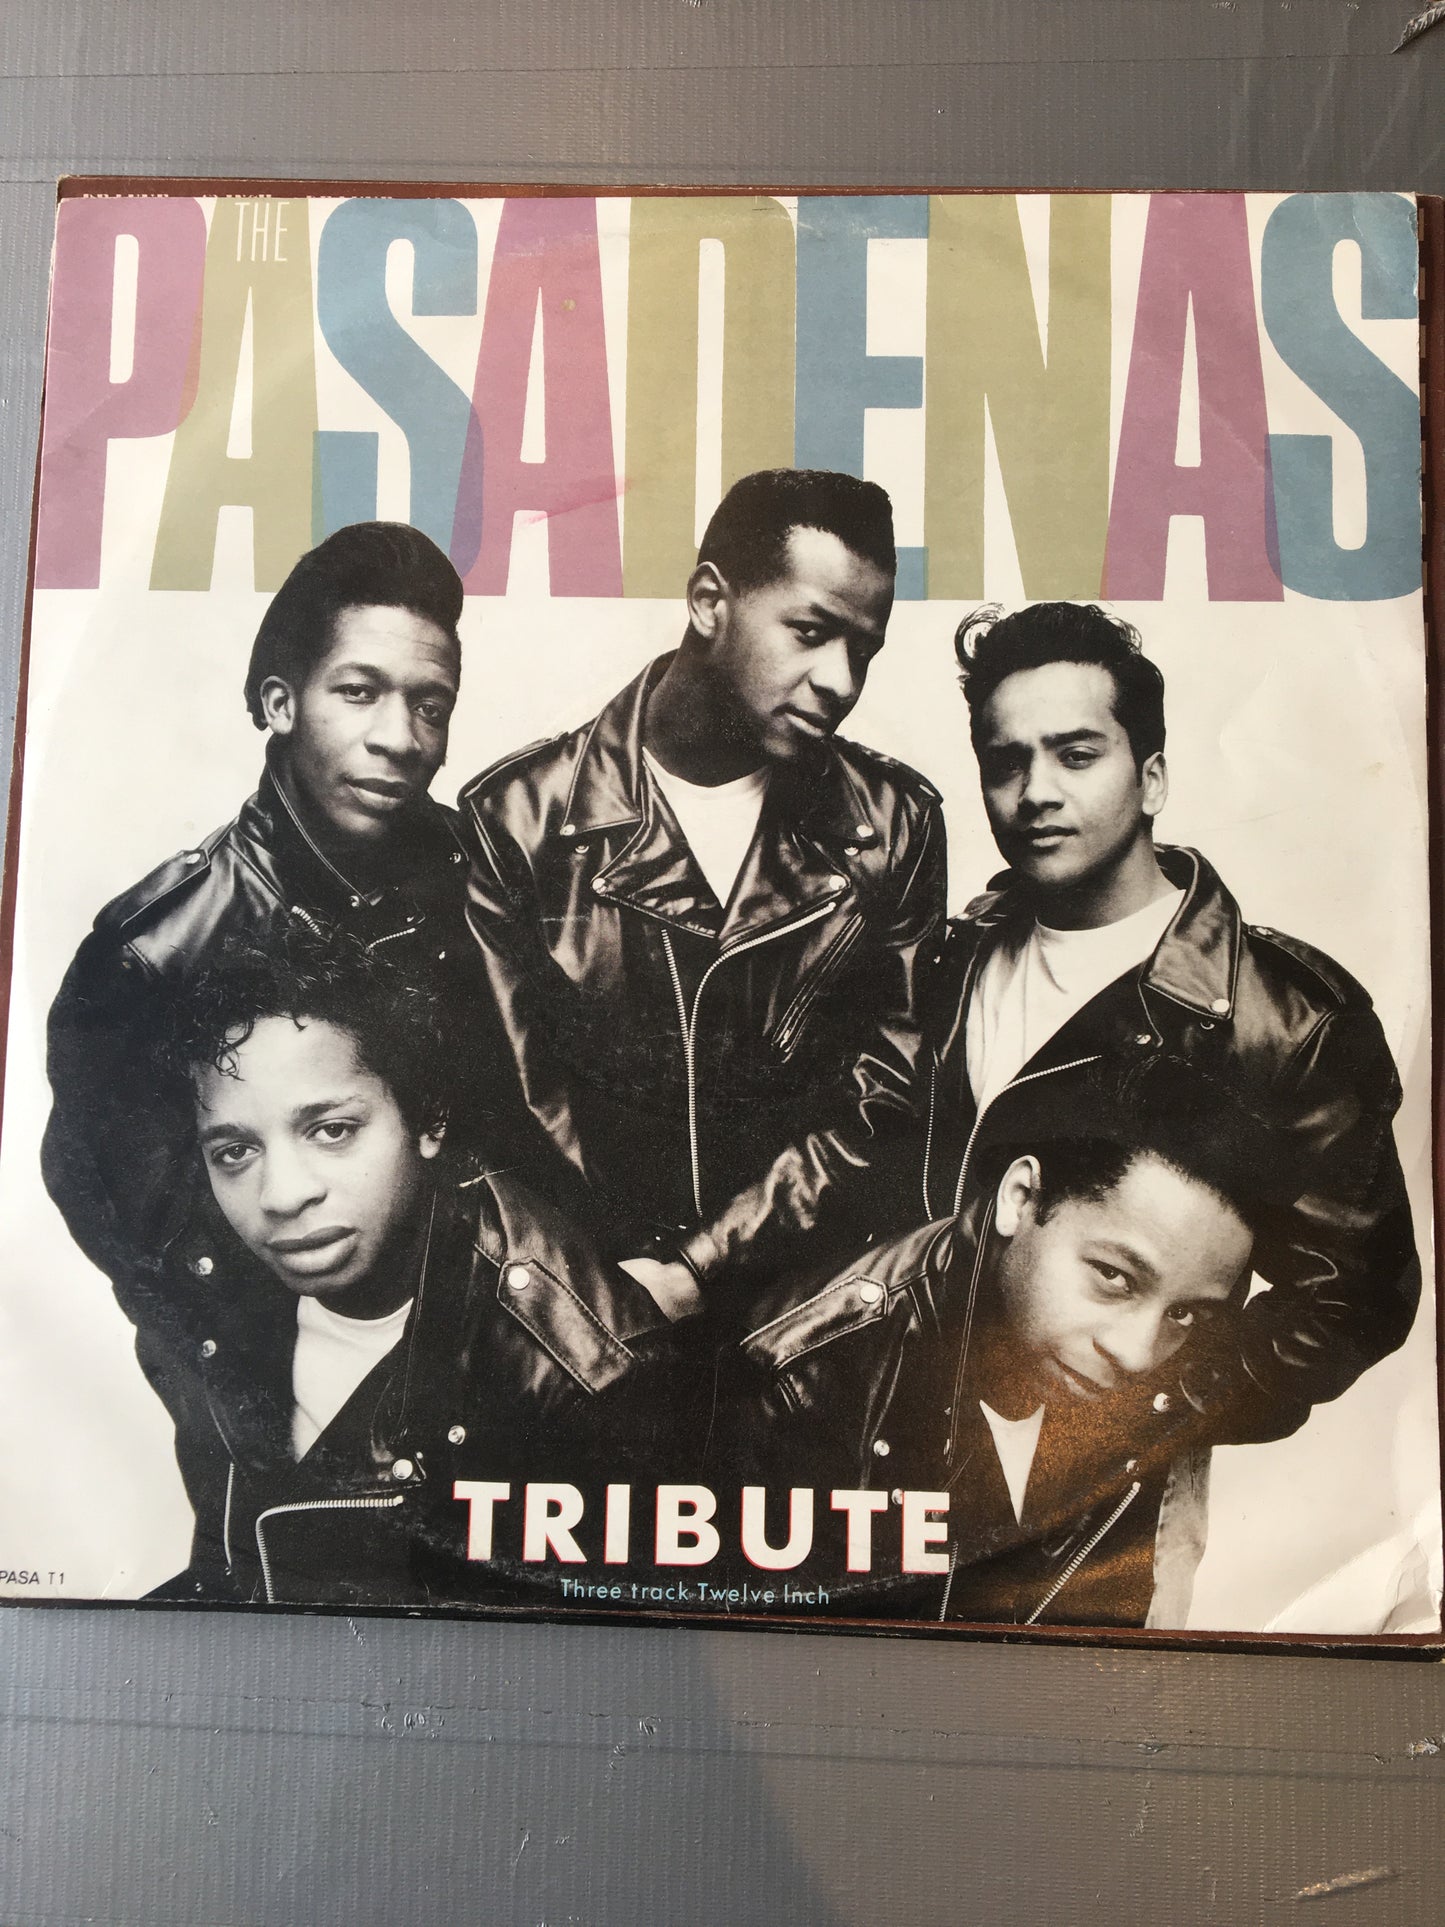 The Pasadenas 12” Tribute